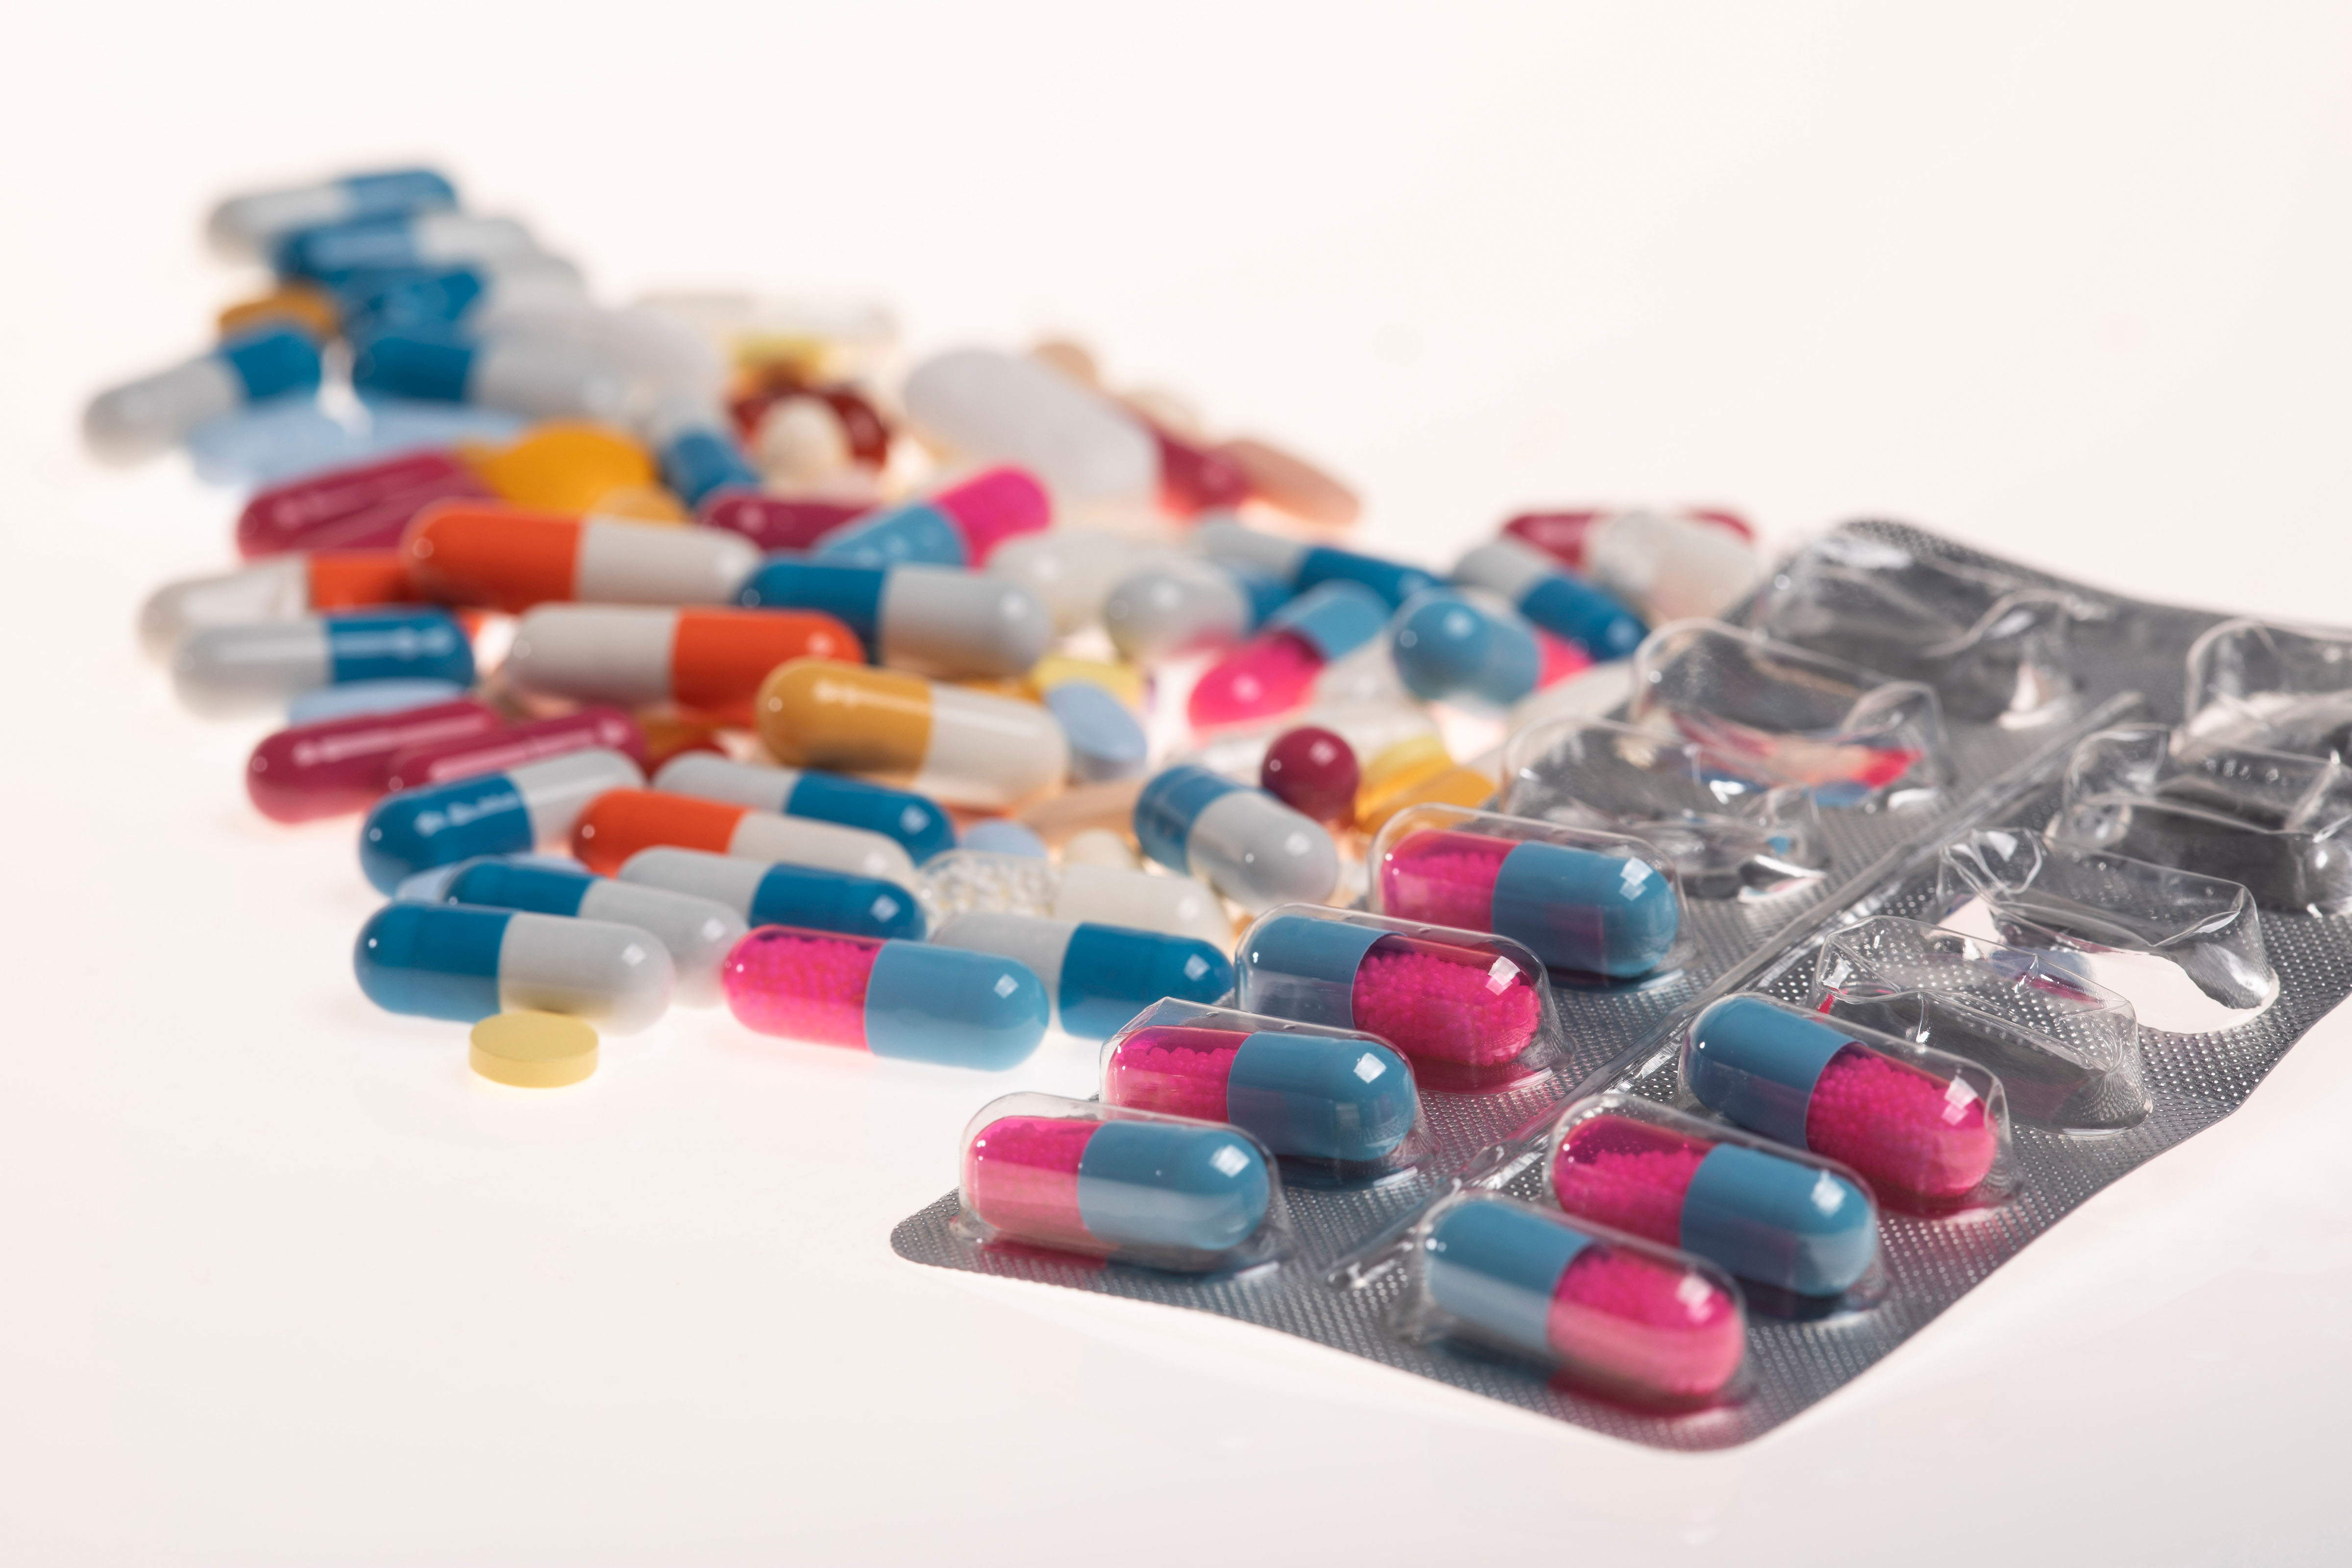 Nahaufnahme vieler, bunter Tabletten in verschiedenen Farben auf einer hellen Unterfläche